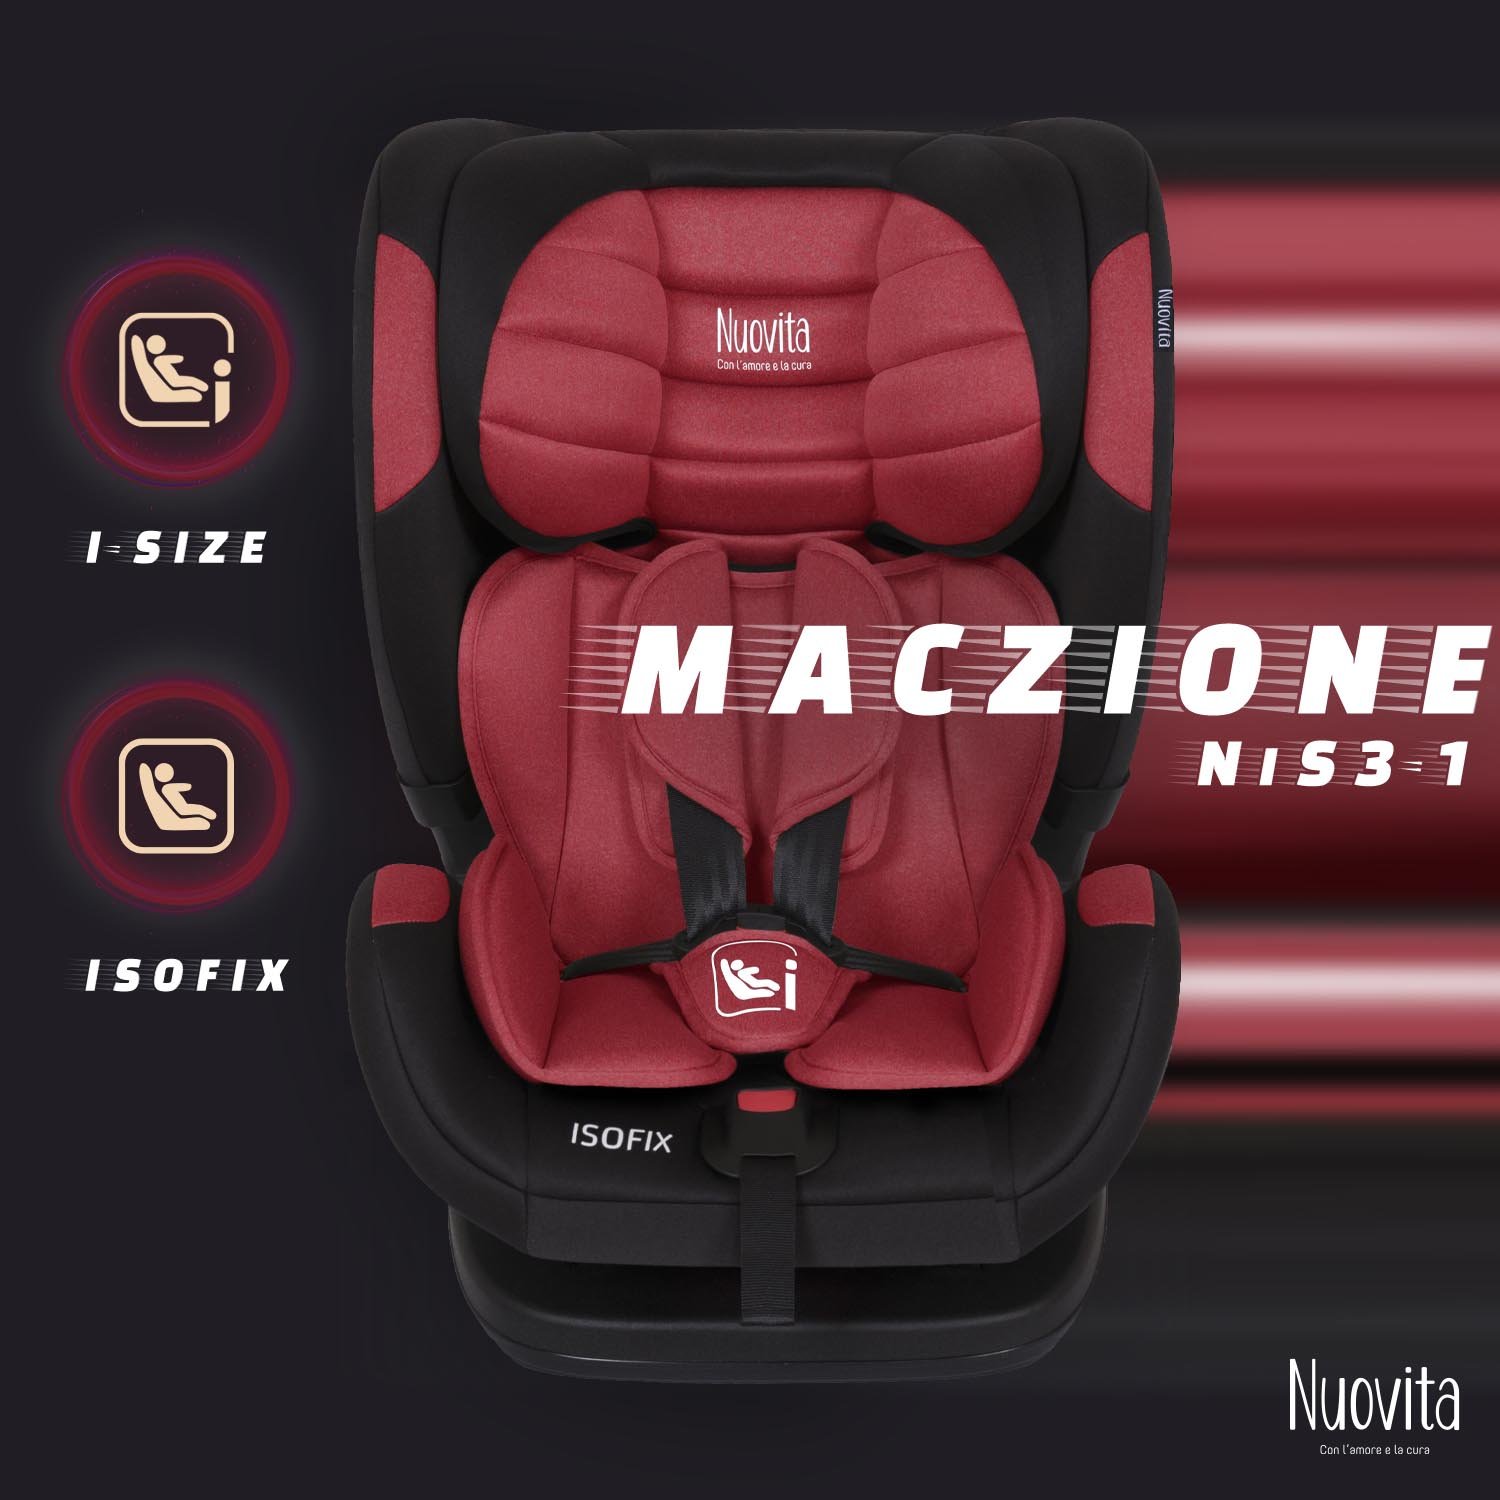 Детское автокресло Nuovita Maczione NiS3-1, Isofix, группа 1,2,3, 9-36 кг (Красный) автокресло nuovita maczione n23i 1